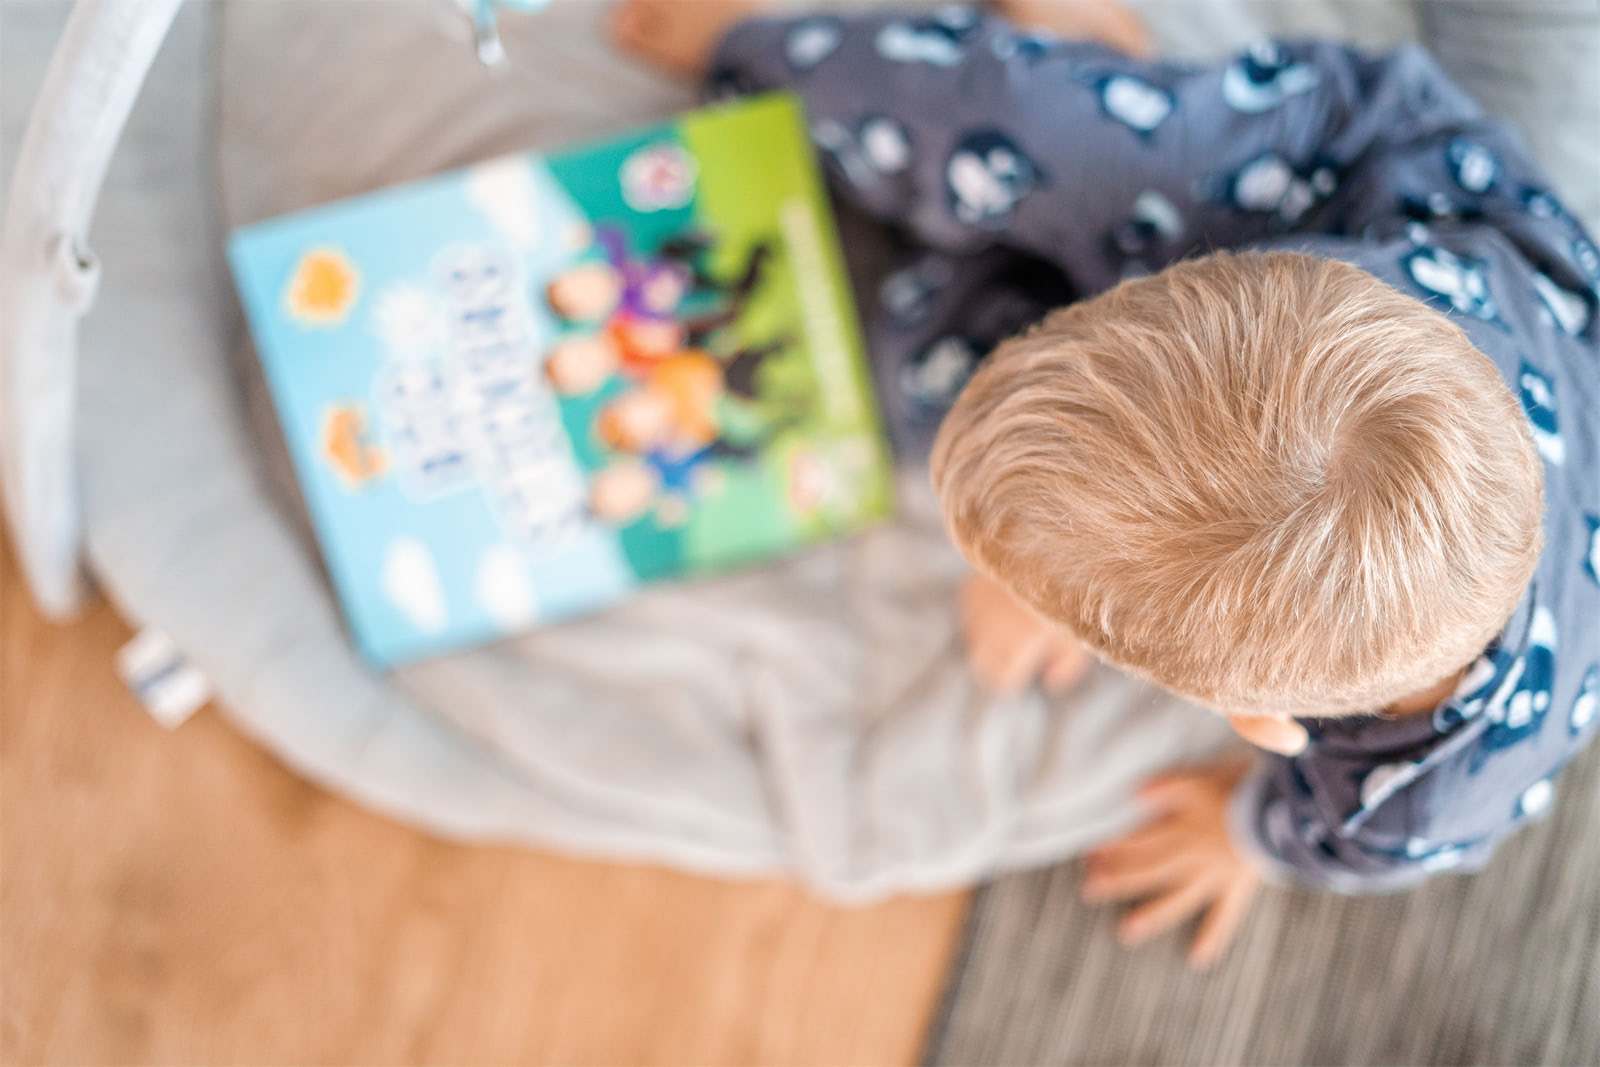 Les 9 meilleurs abonnements livres pour bébé en France - Toutes les Box